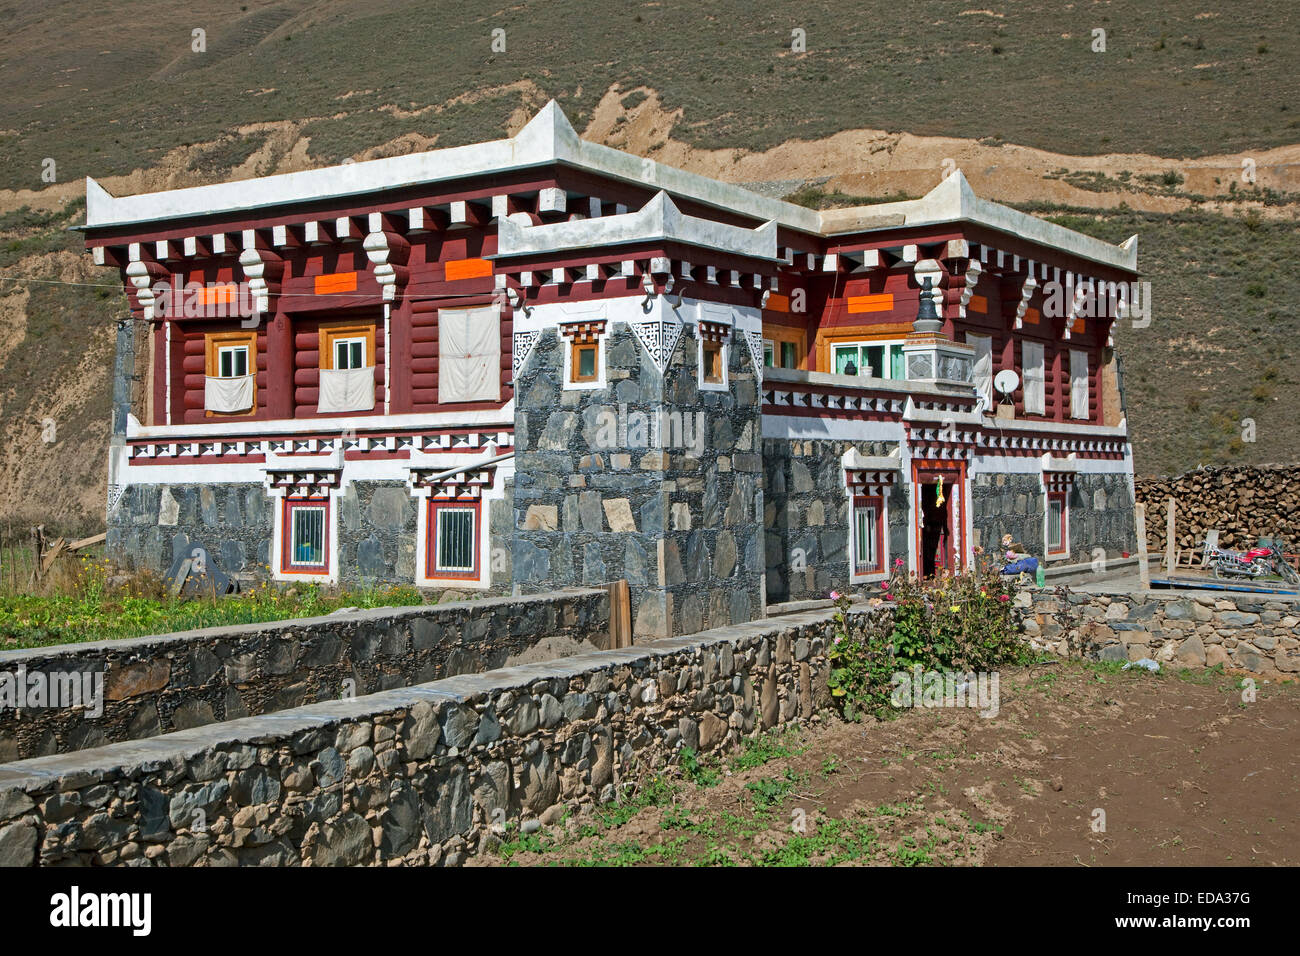 L'architecture tibétaine sur campagne montrant granite-house moderne avec toit plat typique et peu de guet, Sichuan, Chine Banque D'Images